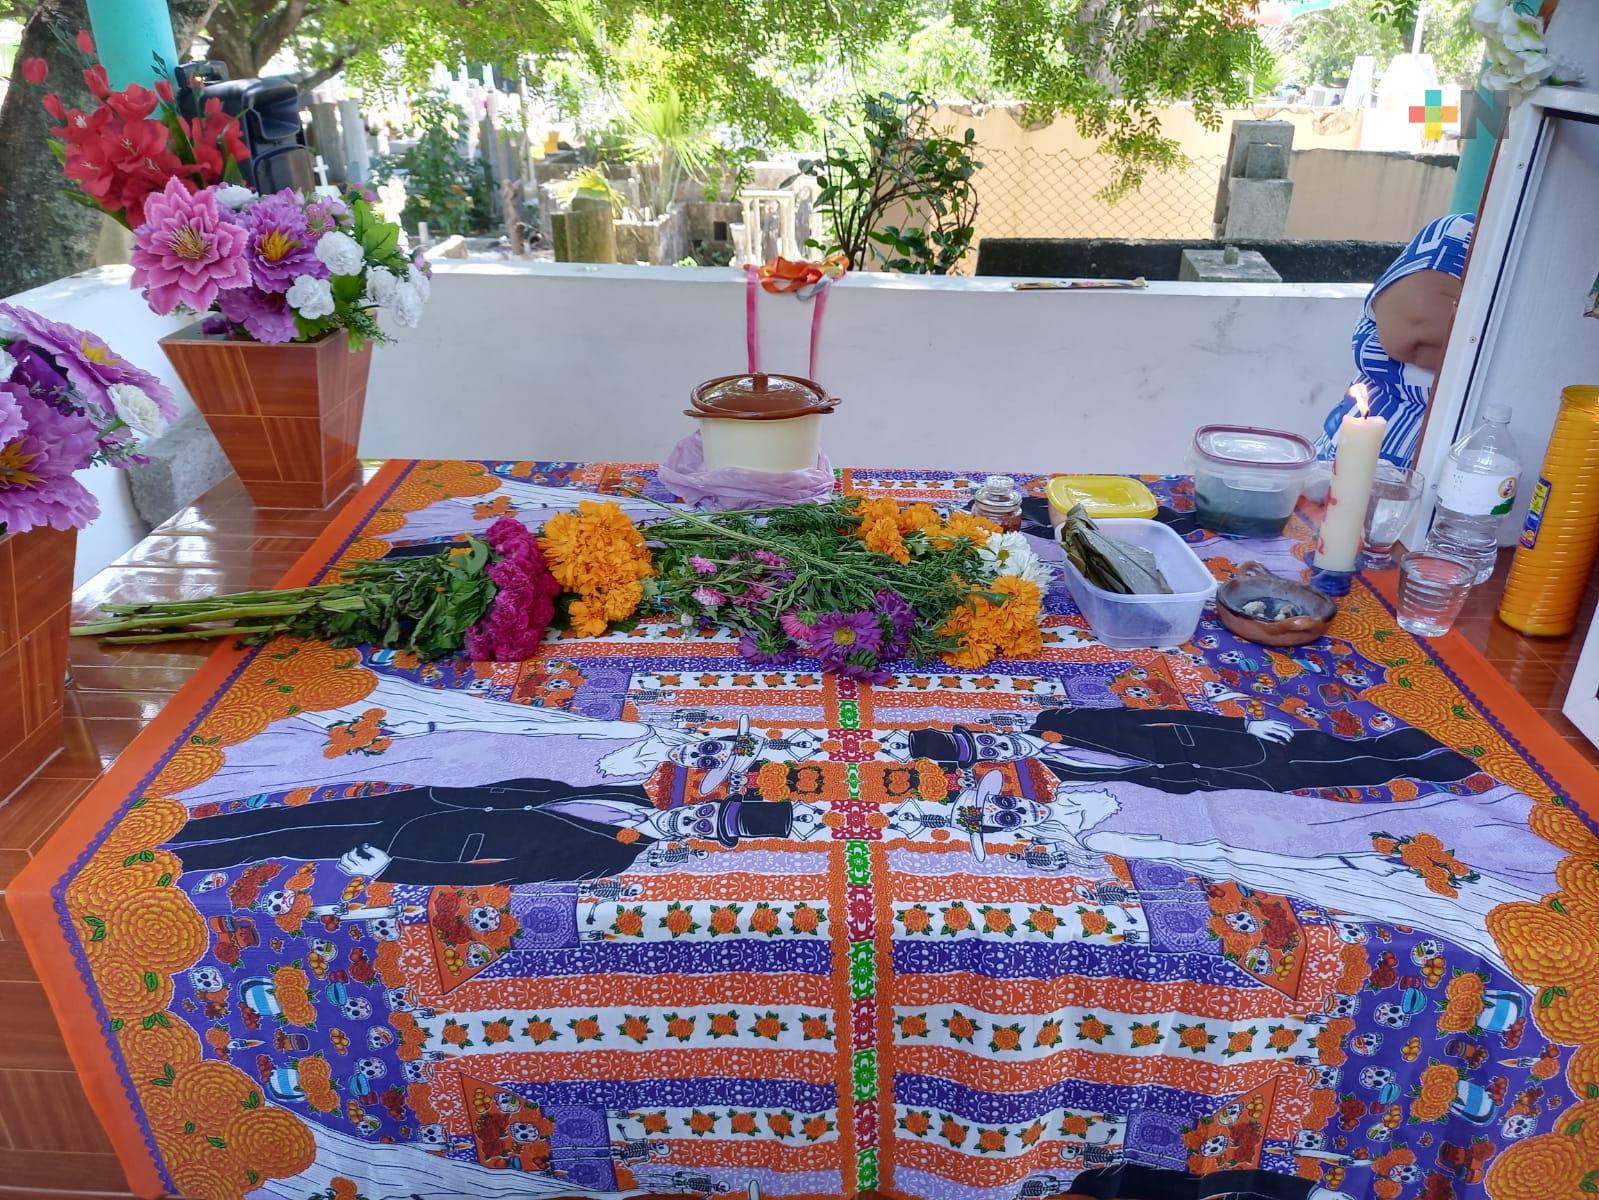 Panteones de Coatza rebosaron flores, música y amor que llevaron visitantes